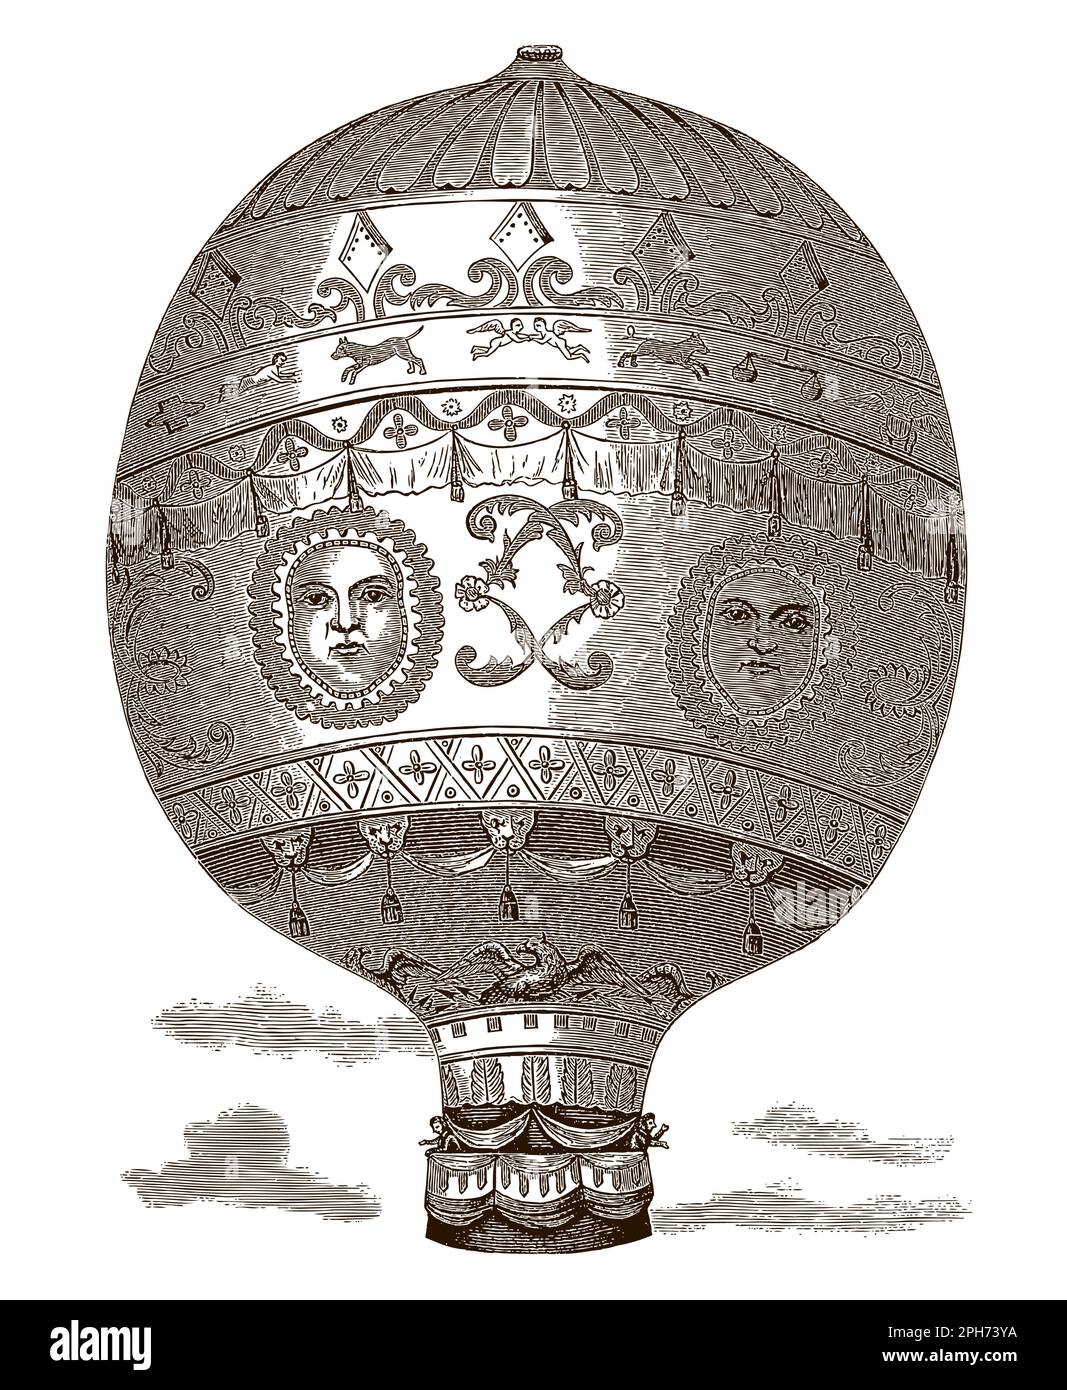 Montgolfière historique transportant deux passagers, après une gravure antique Illustration de Vecteur